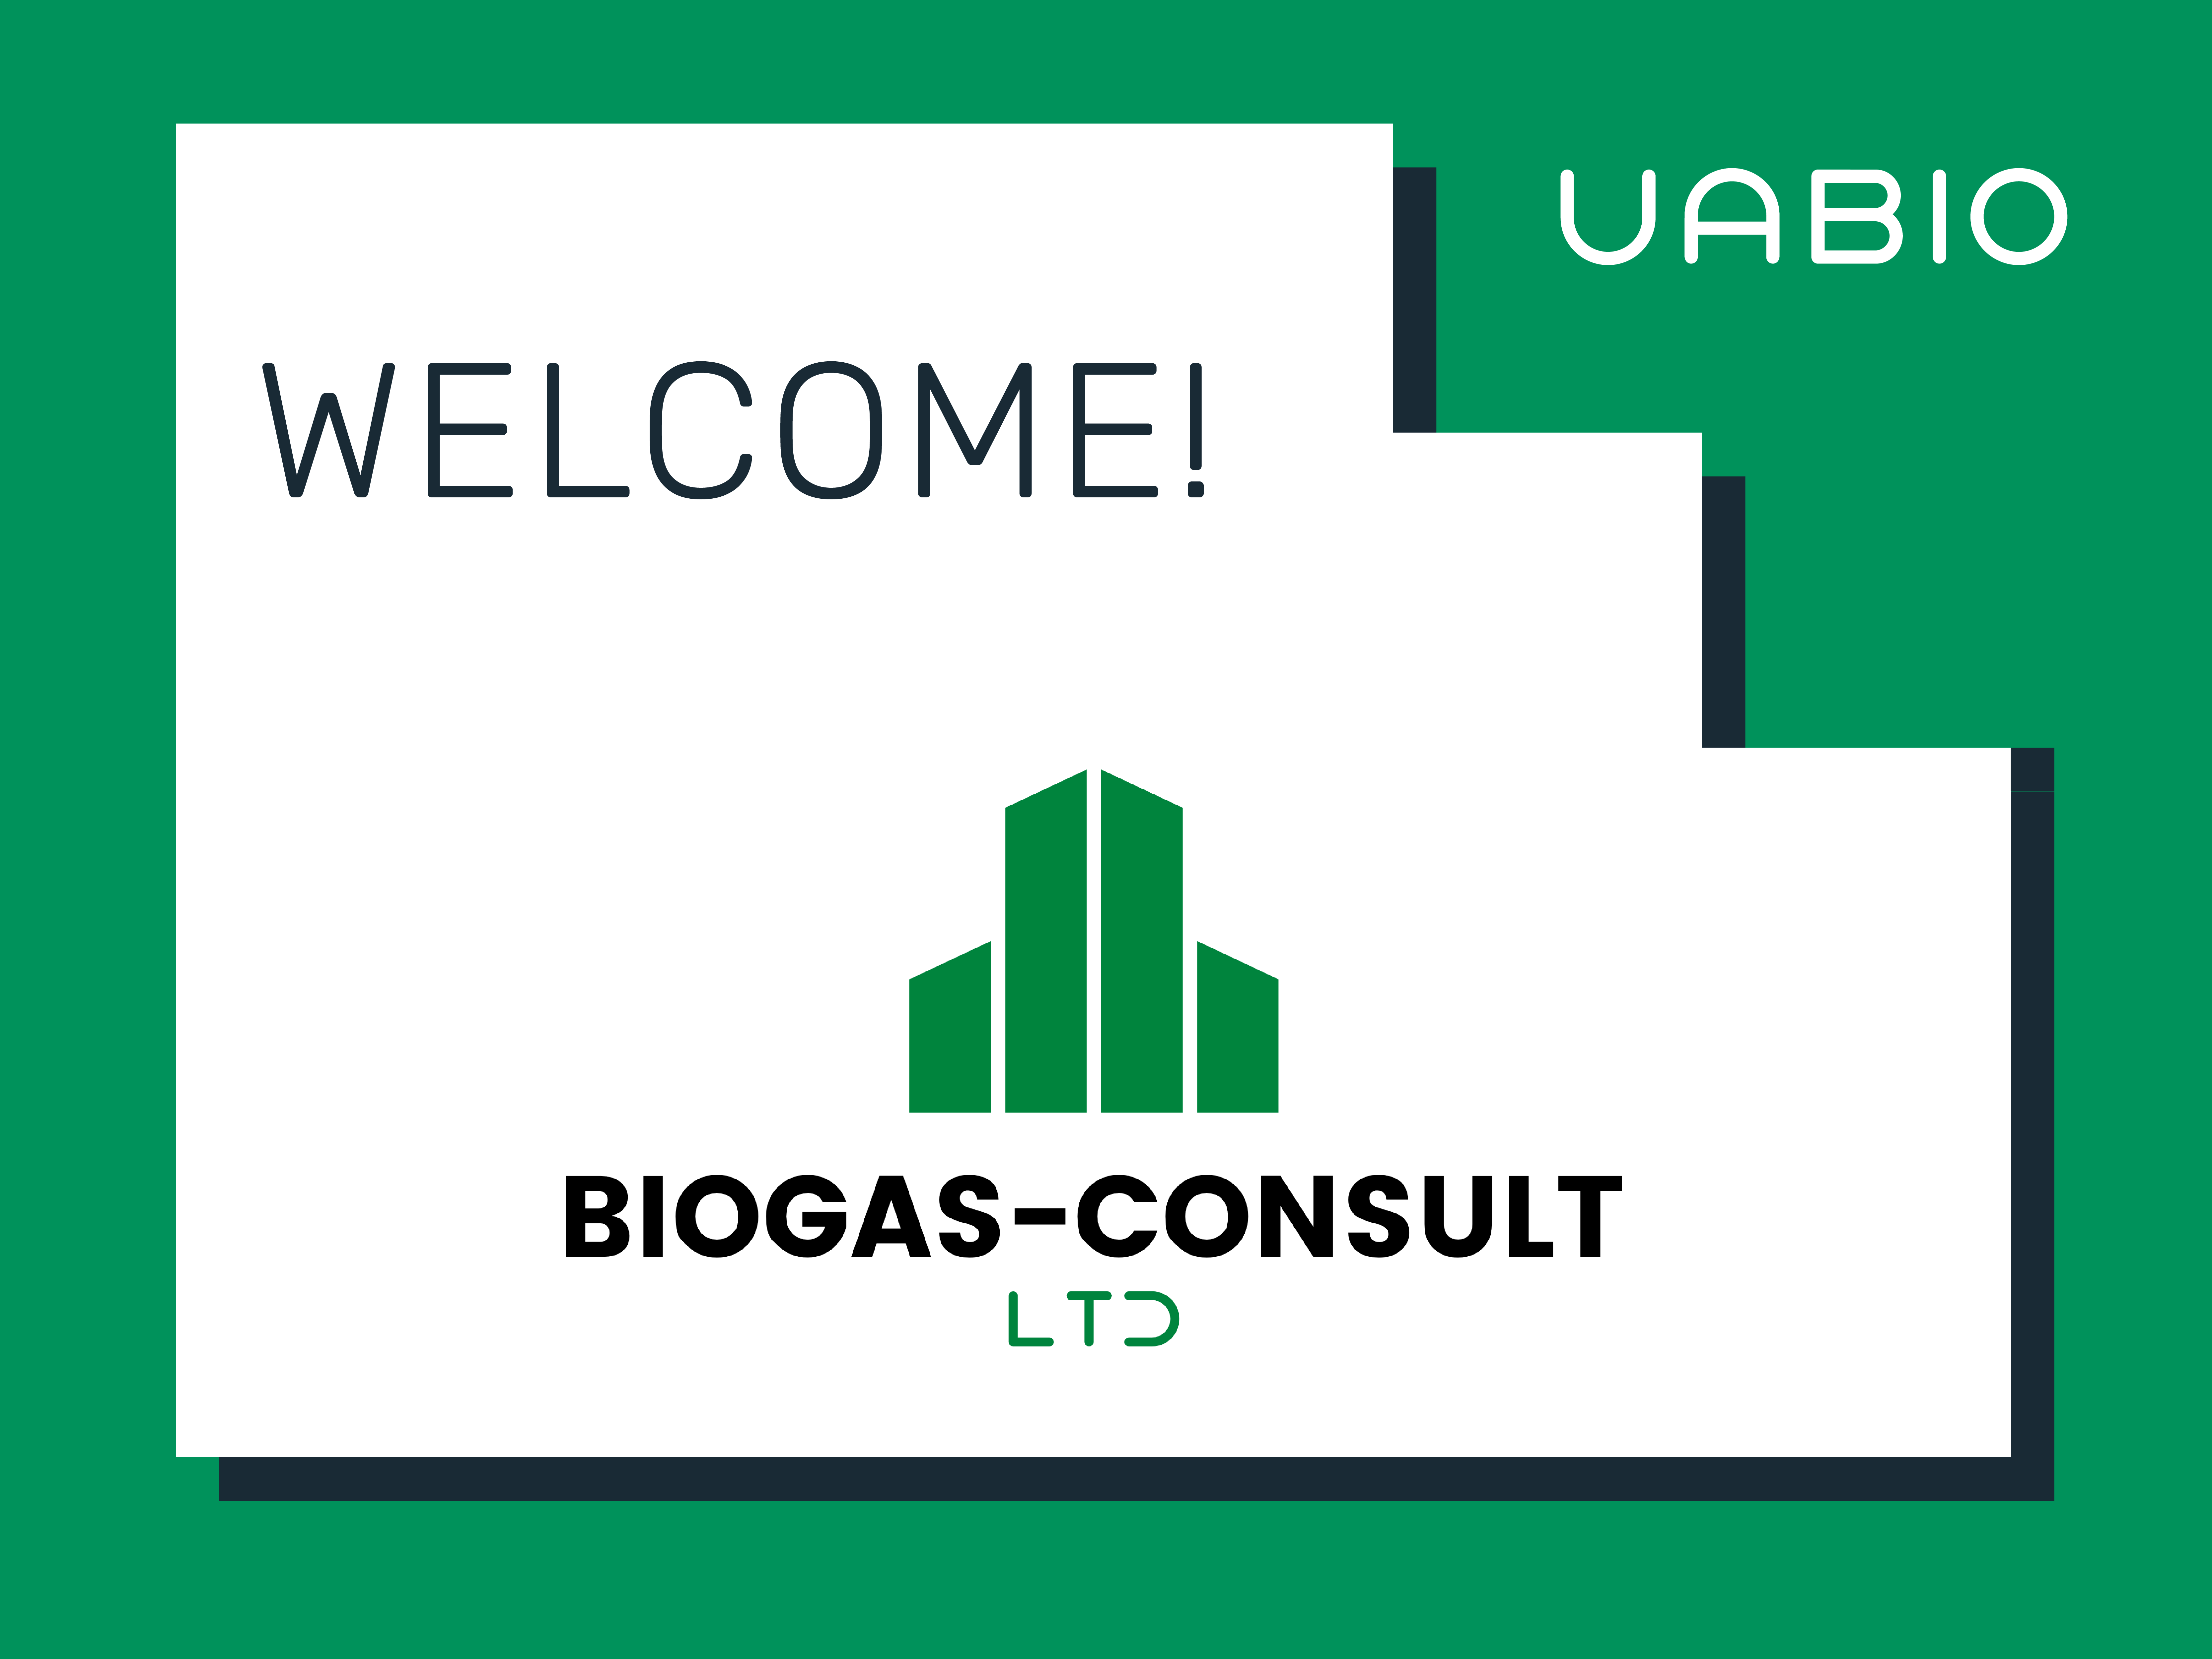 biogas-consult uabio member